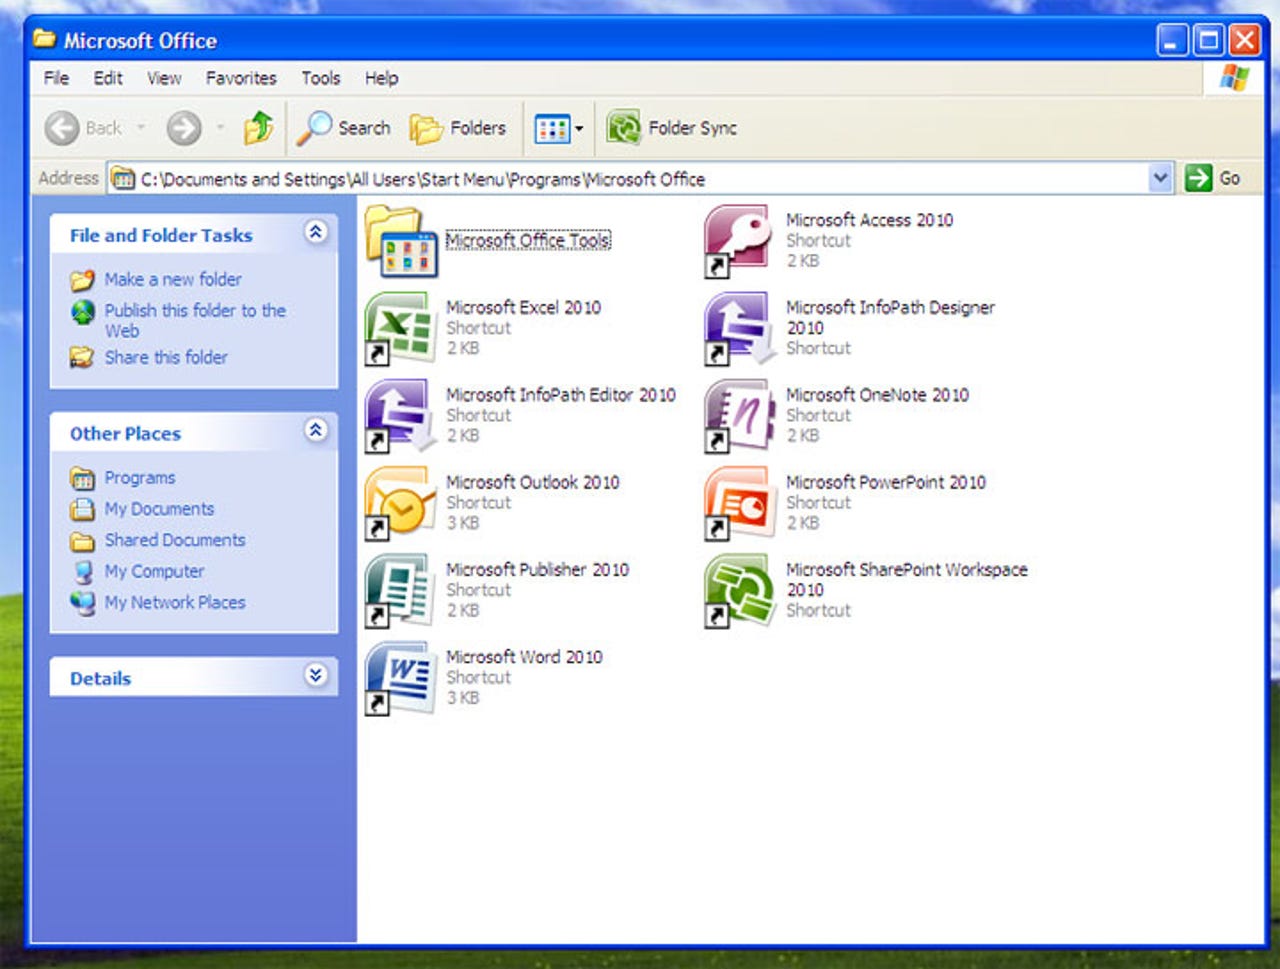 office-2010-technical-preview-screenshots22.jpg